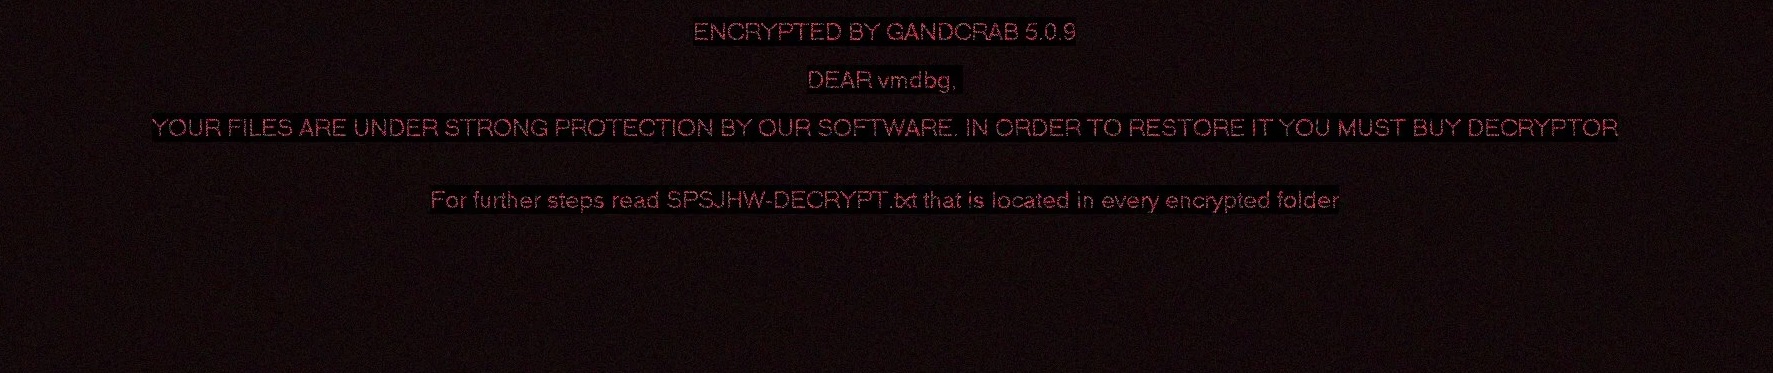 gandcrab 5.0.9 cryptovirus ransomware desktop tapet